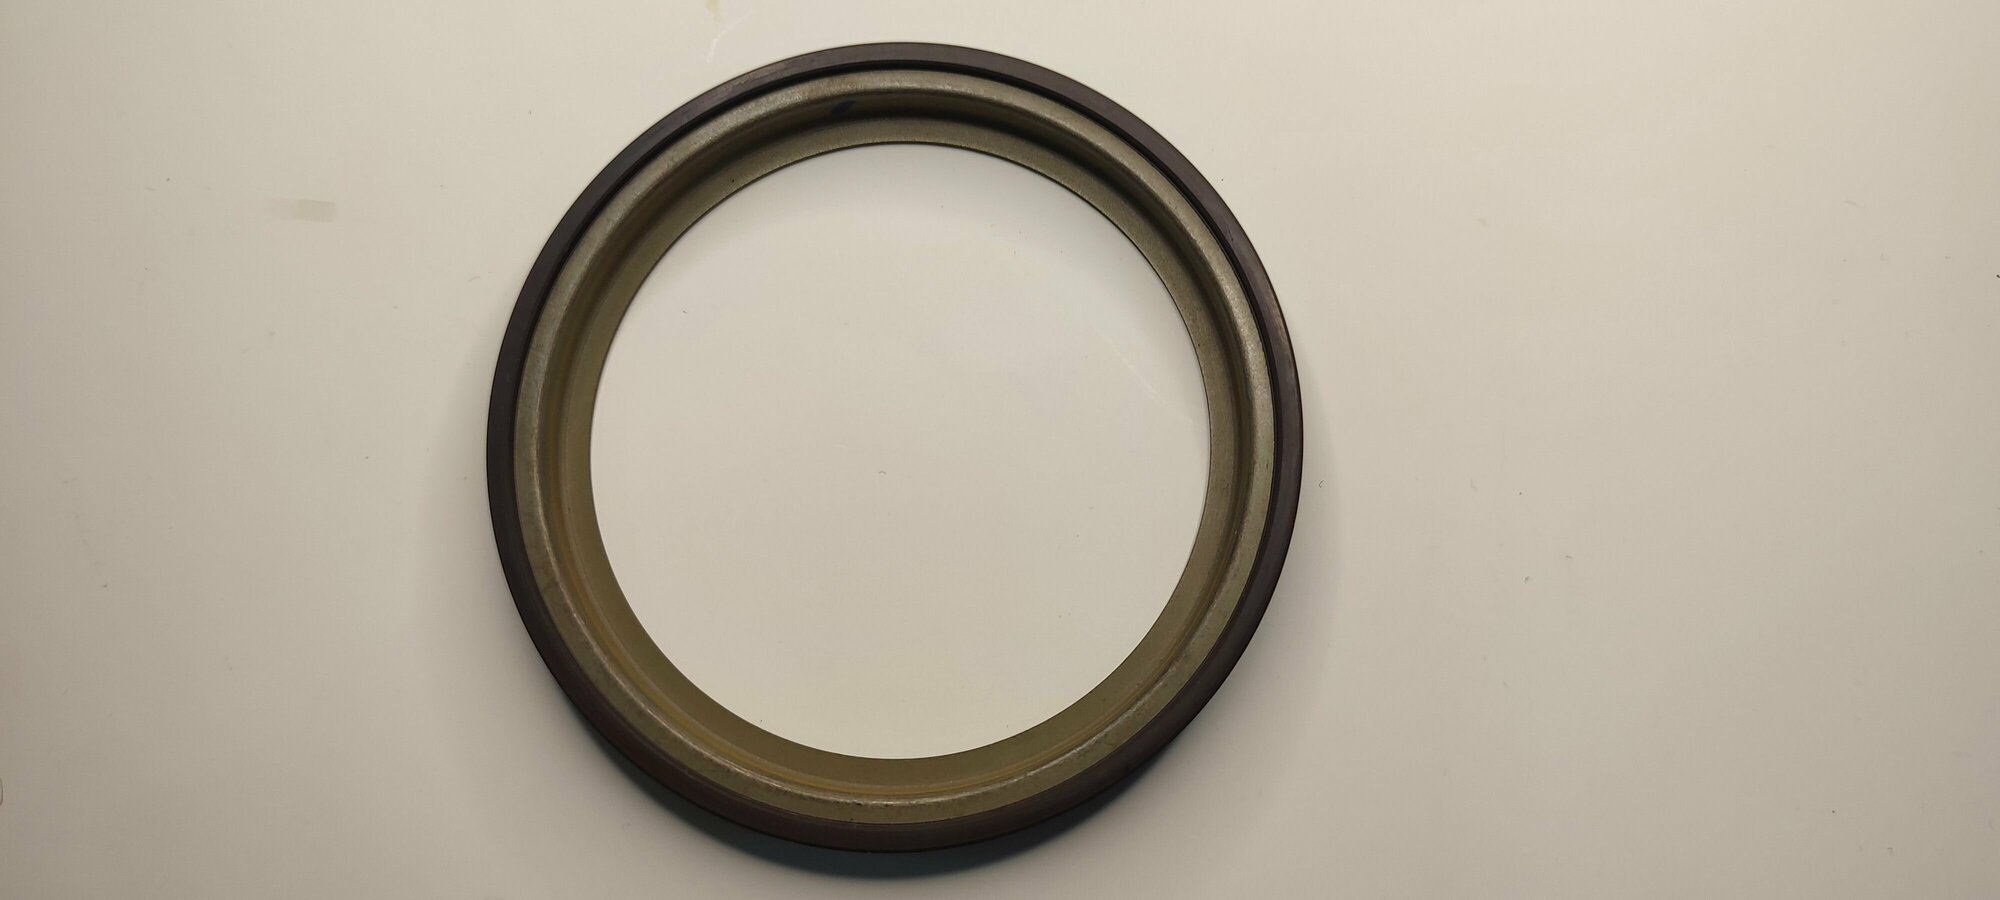 Кольцо магнитное АБС заднего тормозного барабана Renoult Lada Nissan Almera G15. Арт. ESL 432001501R